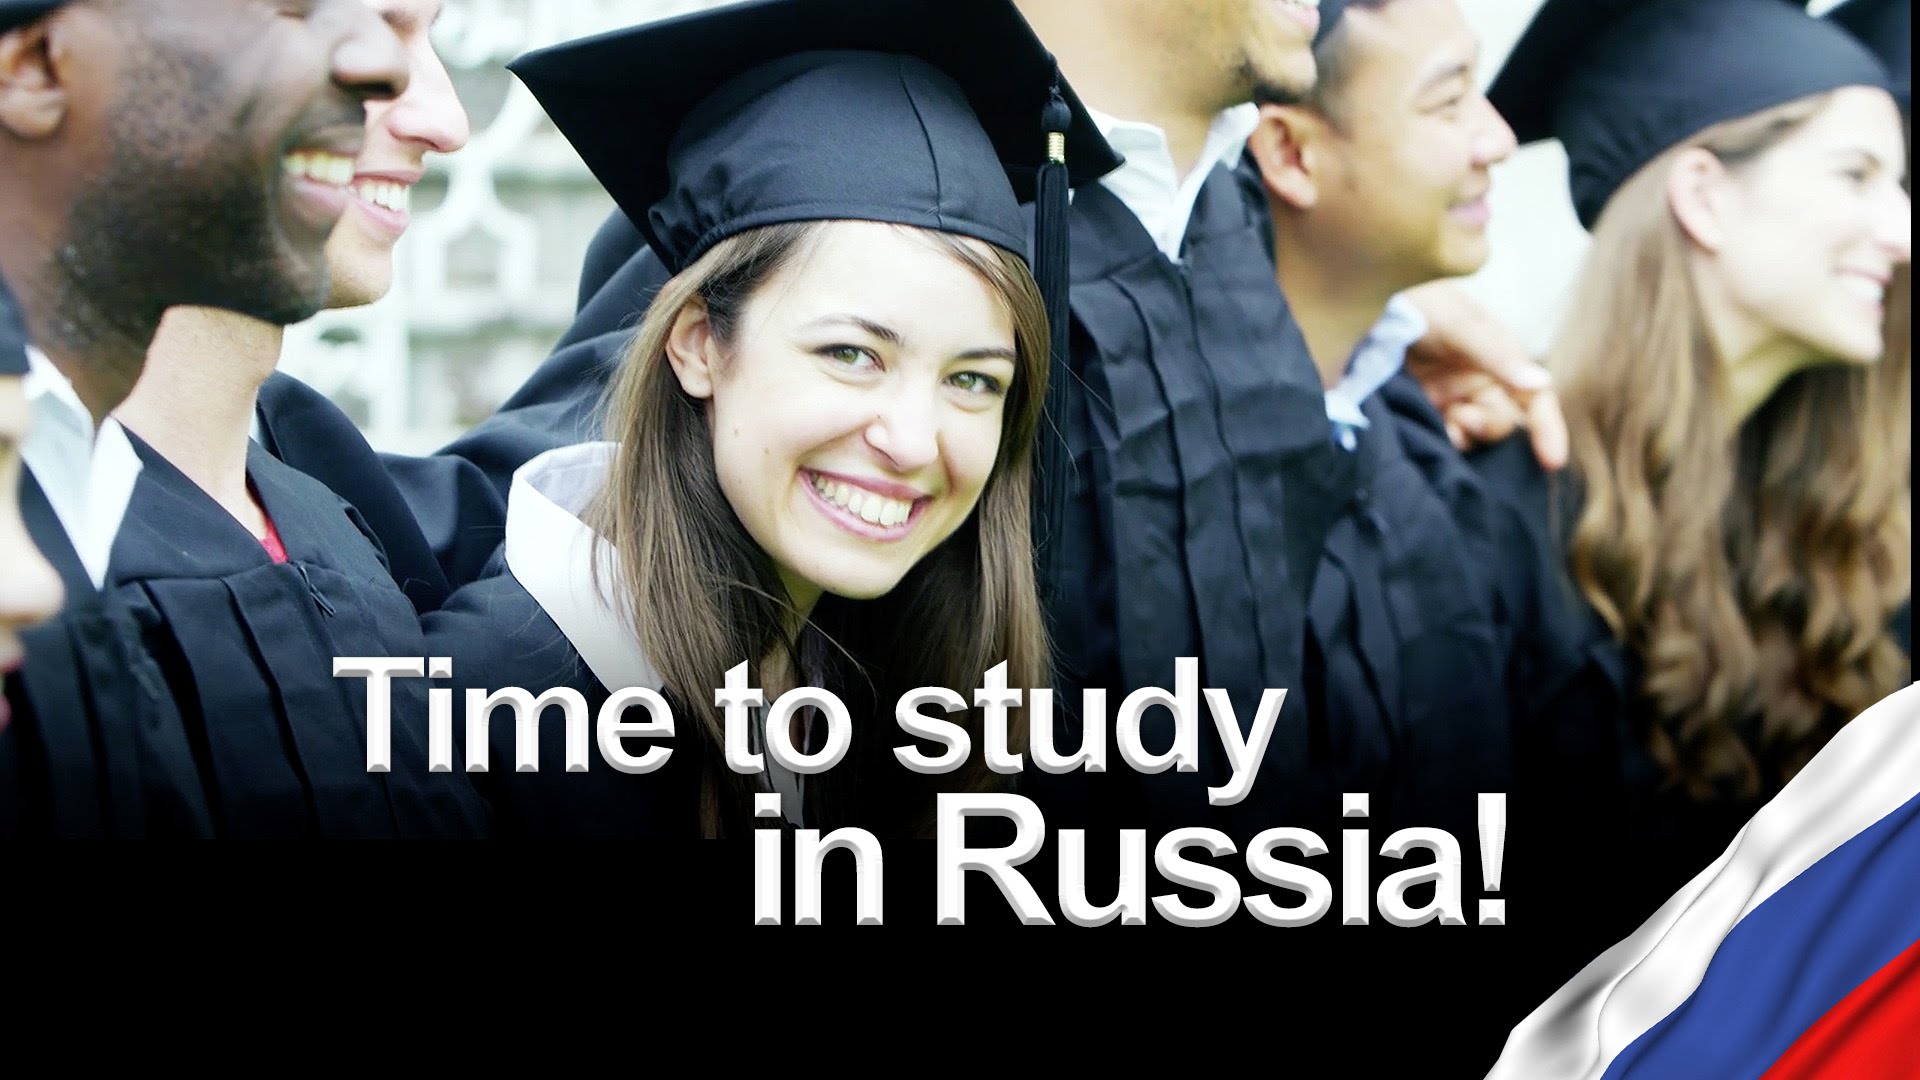 Обучение в финляндии, университеты и высшее образование в финляндии для русских бесплатно, колледжи